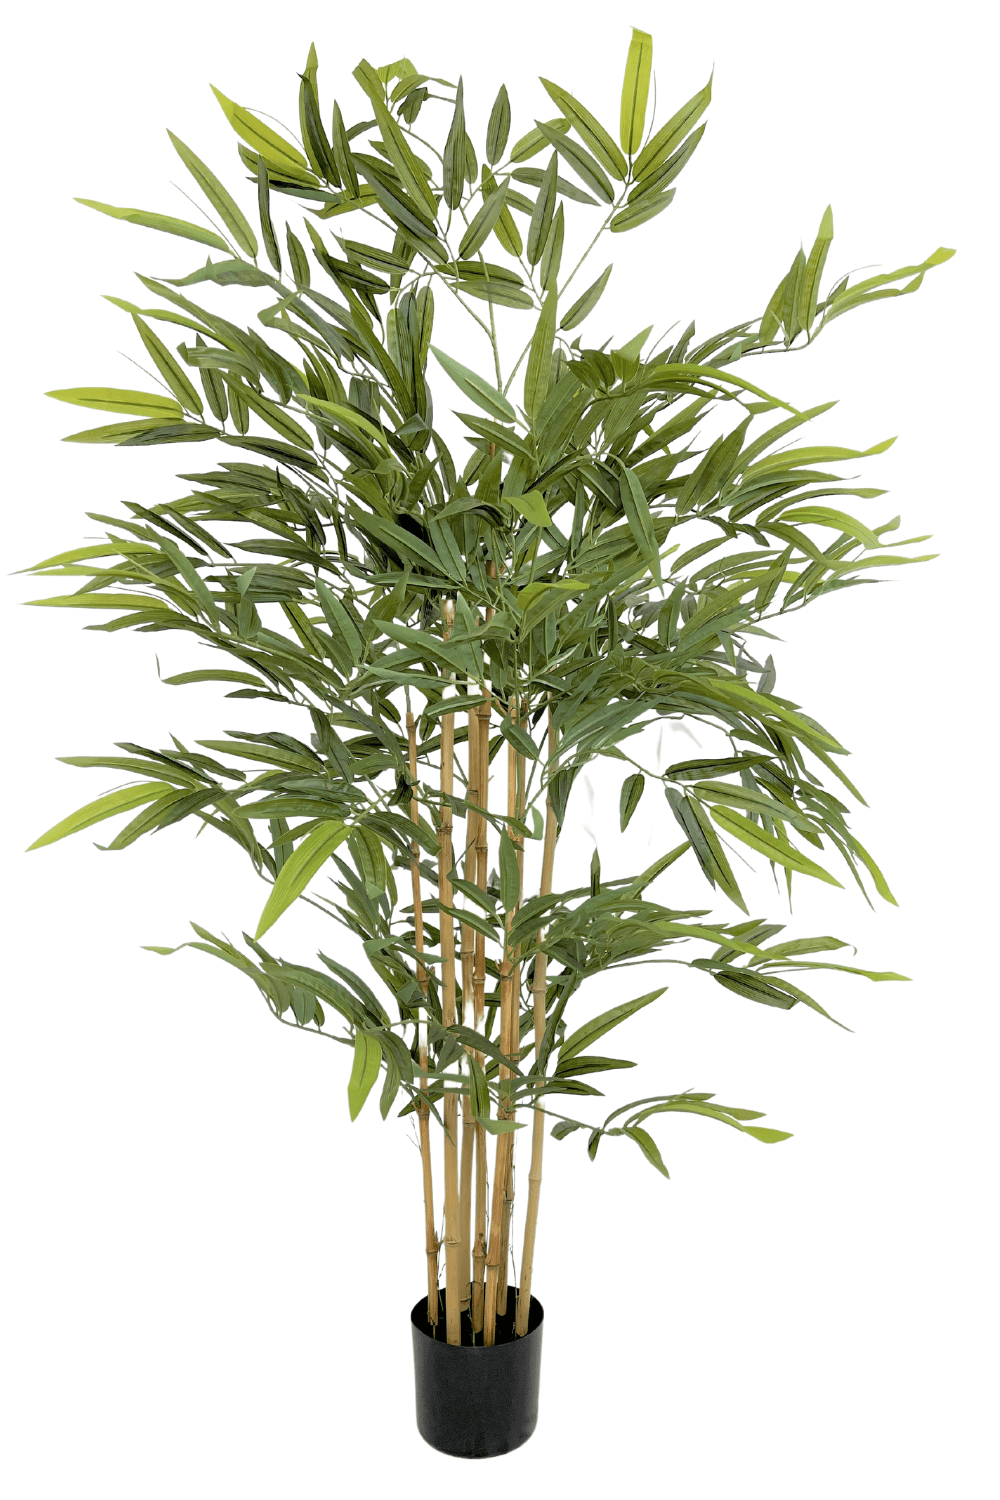 Bambou artificiel en pot 150 cm